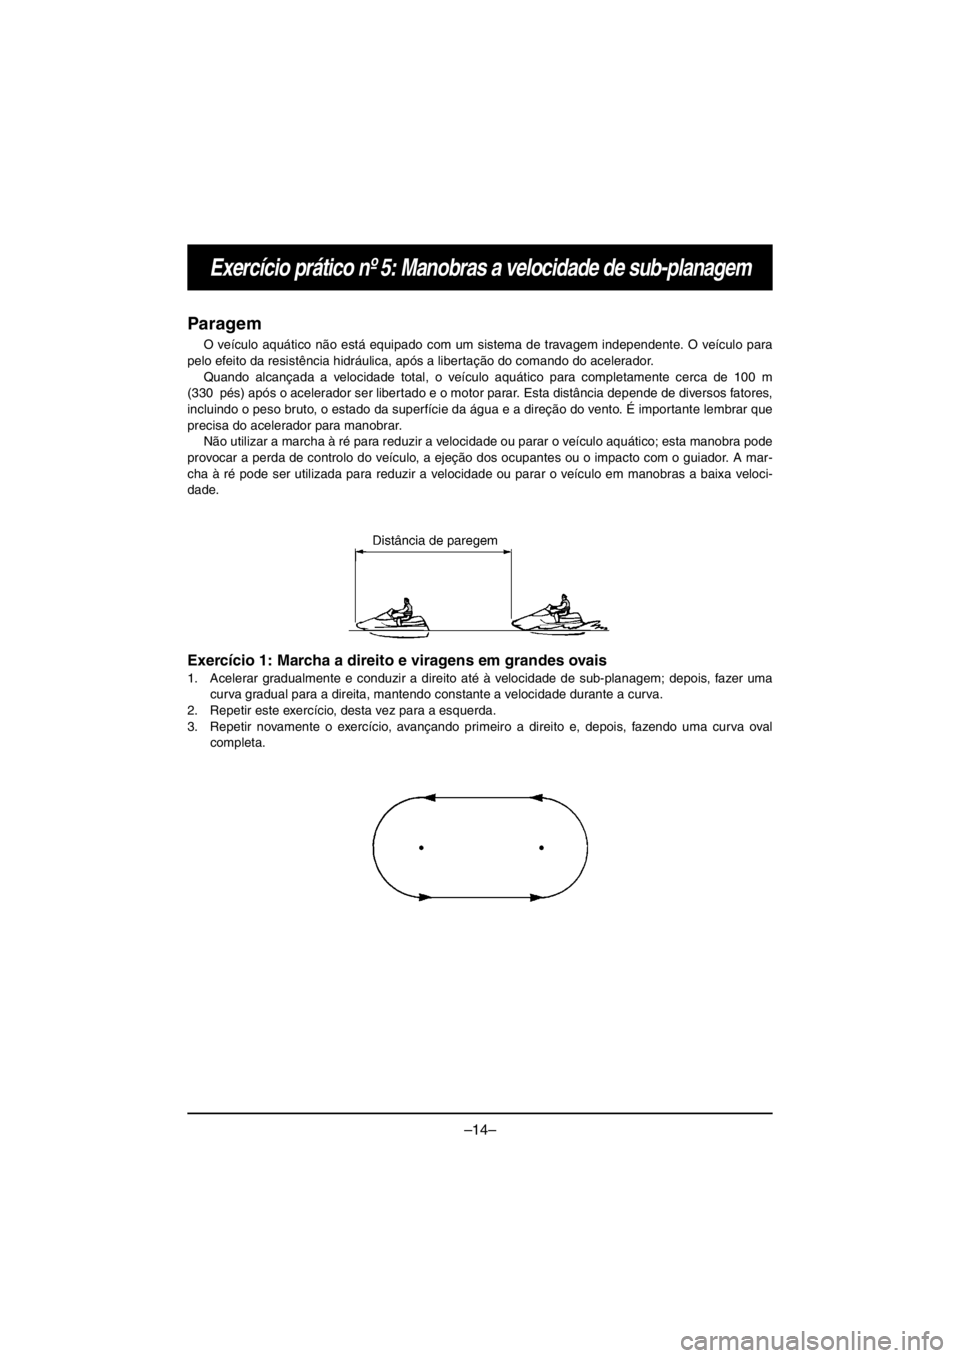 YAMAHA V1 2016  Manuale duso (in Italian) –14–
Exercício prático nº 5: Manobras a velocidade de sub-planagem
Paragem
O veículo aquático não está equipado com um sistema de travagem independente. O veículo para
pelo efeito da resis